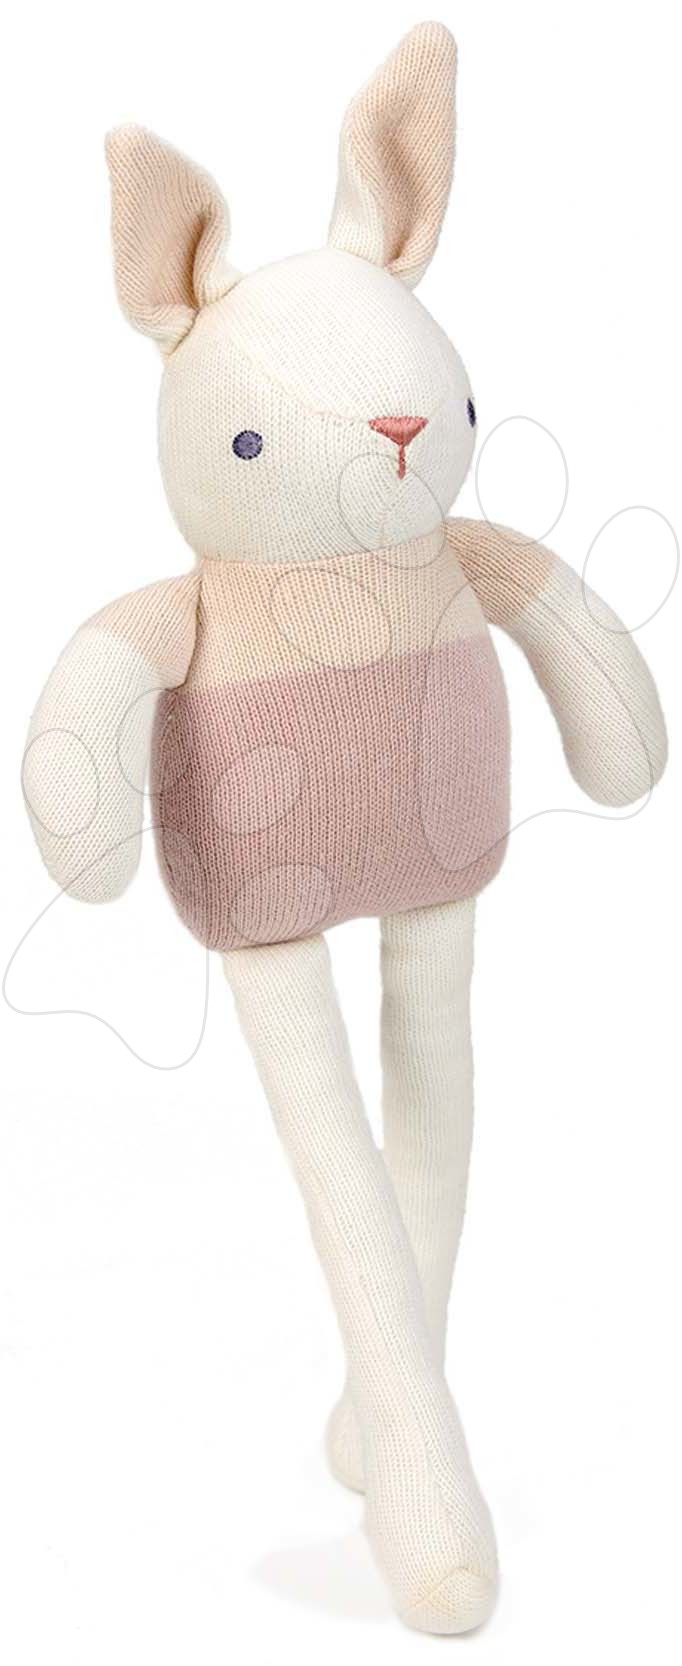 Panenka pletená zajíček Baby Threads Cream Bunny ThreadBear 35 cm krémový z jemné měkké bavlny od 0 měsíců